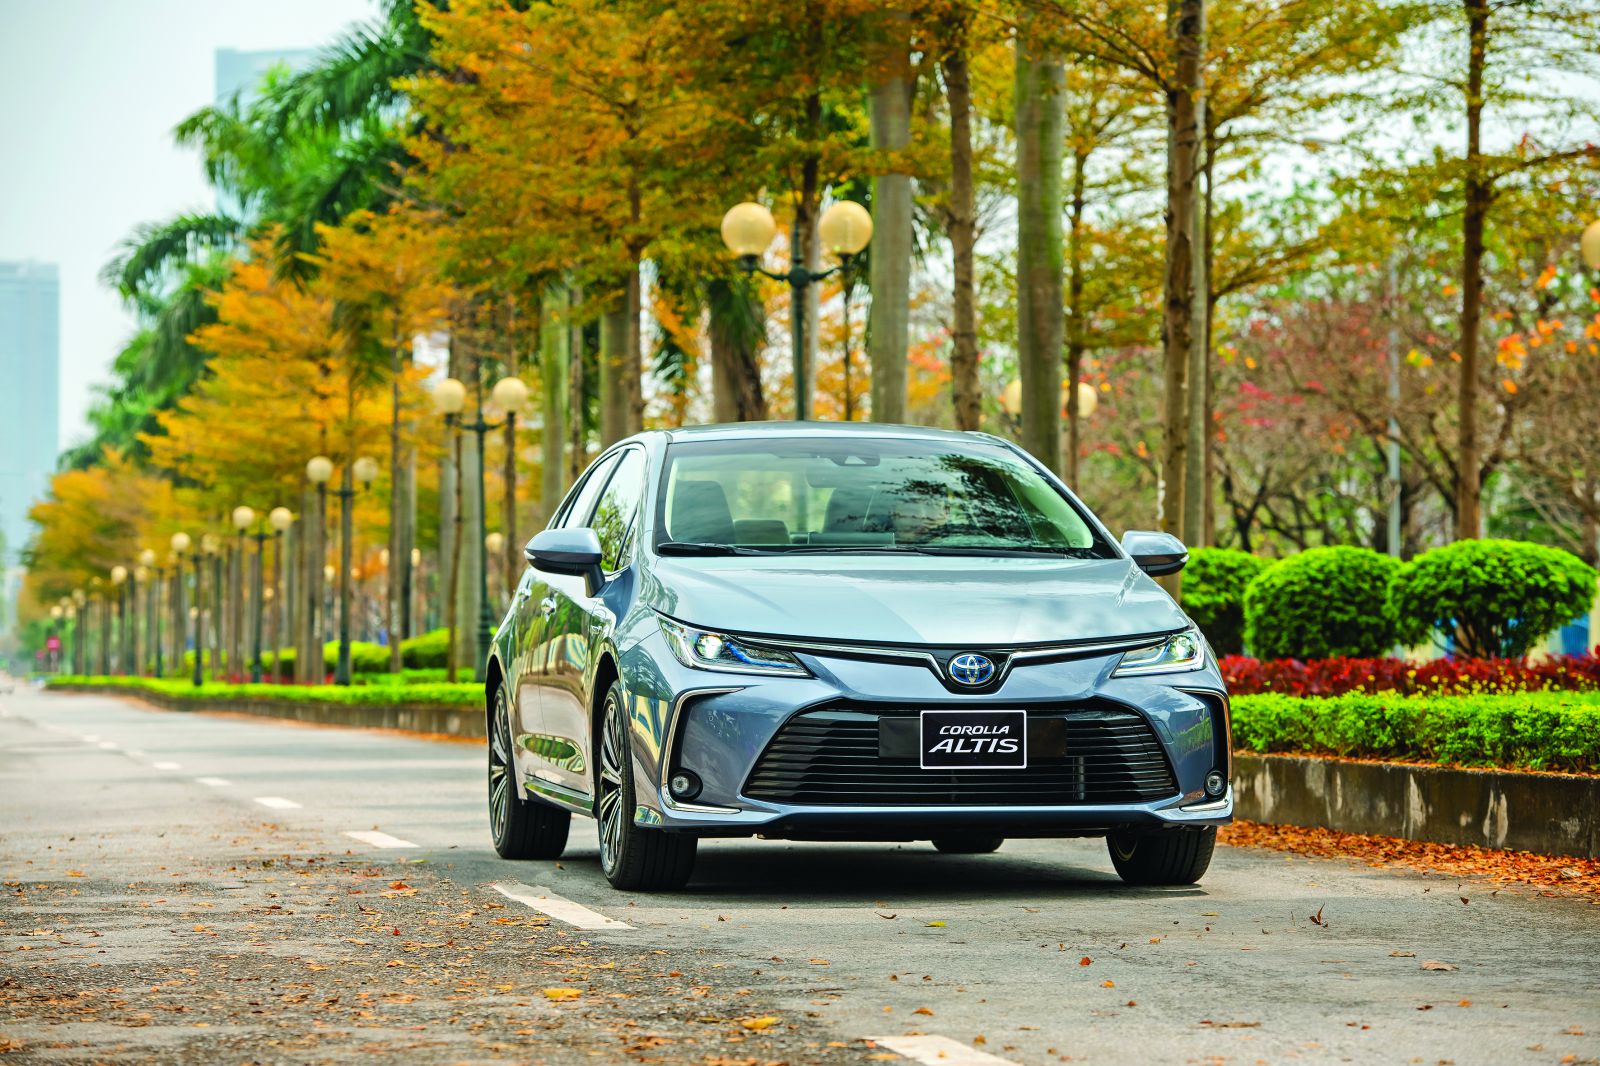  Mới đây nhất, ngày 09/03 Toyota Việt Nam giới thiệu mẫu xe hybrid thứ 3: Corolla Altis 1.8HEV